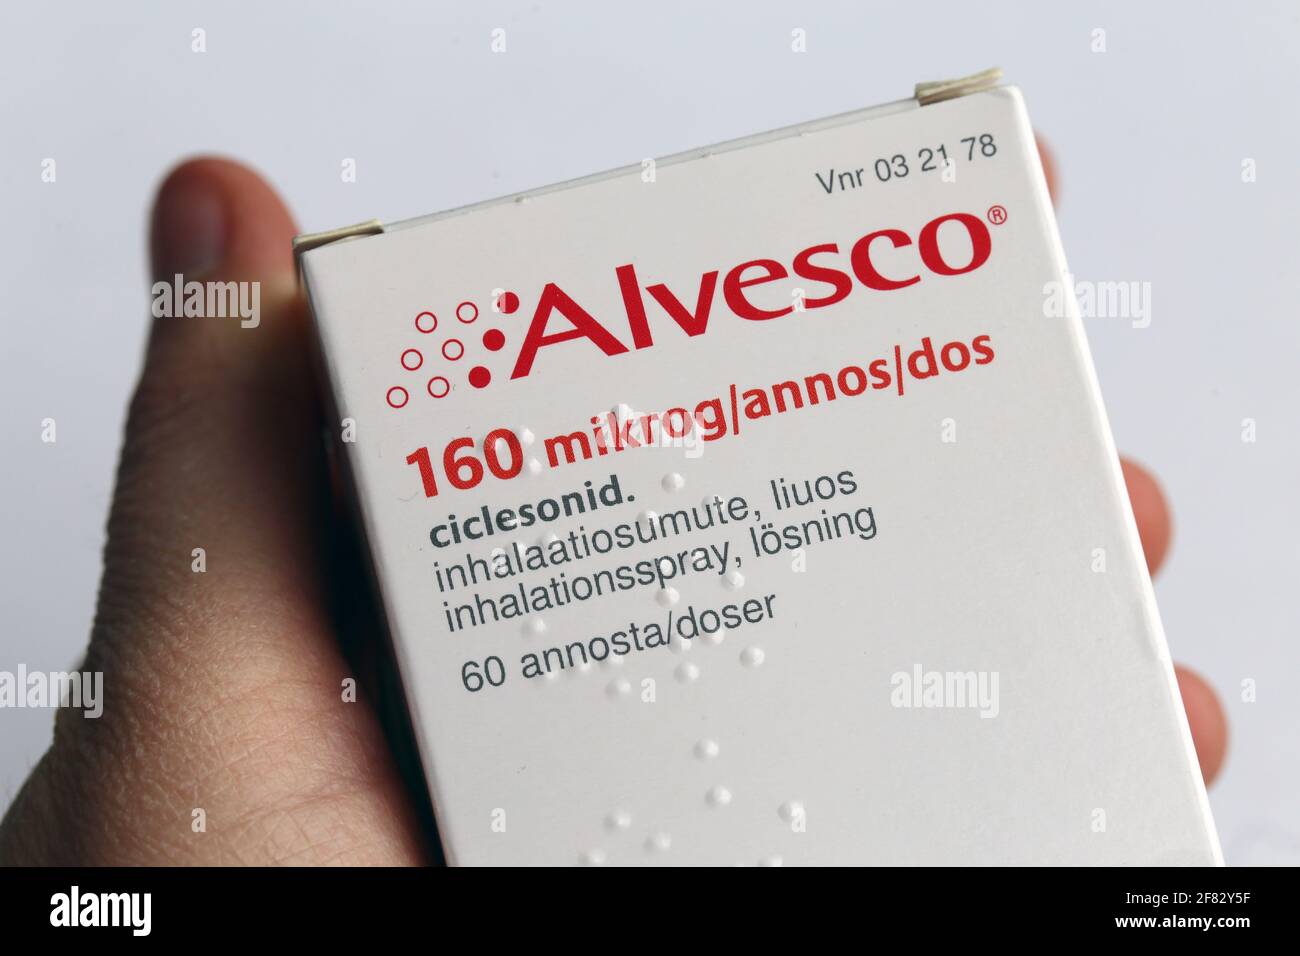 Alvesco 160 mikrogrammes par dose astma Medicine avril 2020, Espoo, Finlande. Alvesco comprend la cortisone utilisée pour traiter l'inflammation des poumons. Banque D'Images